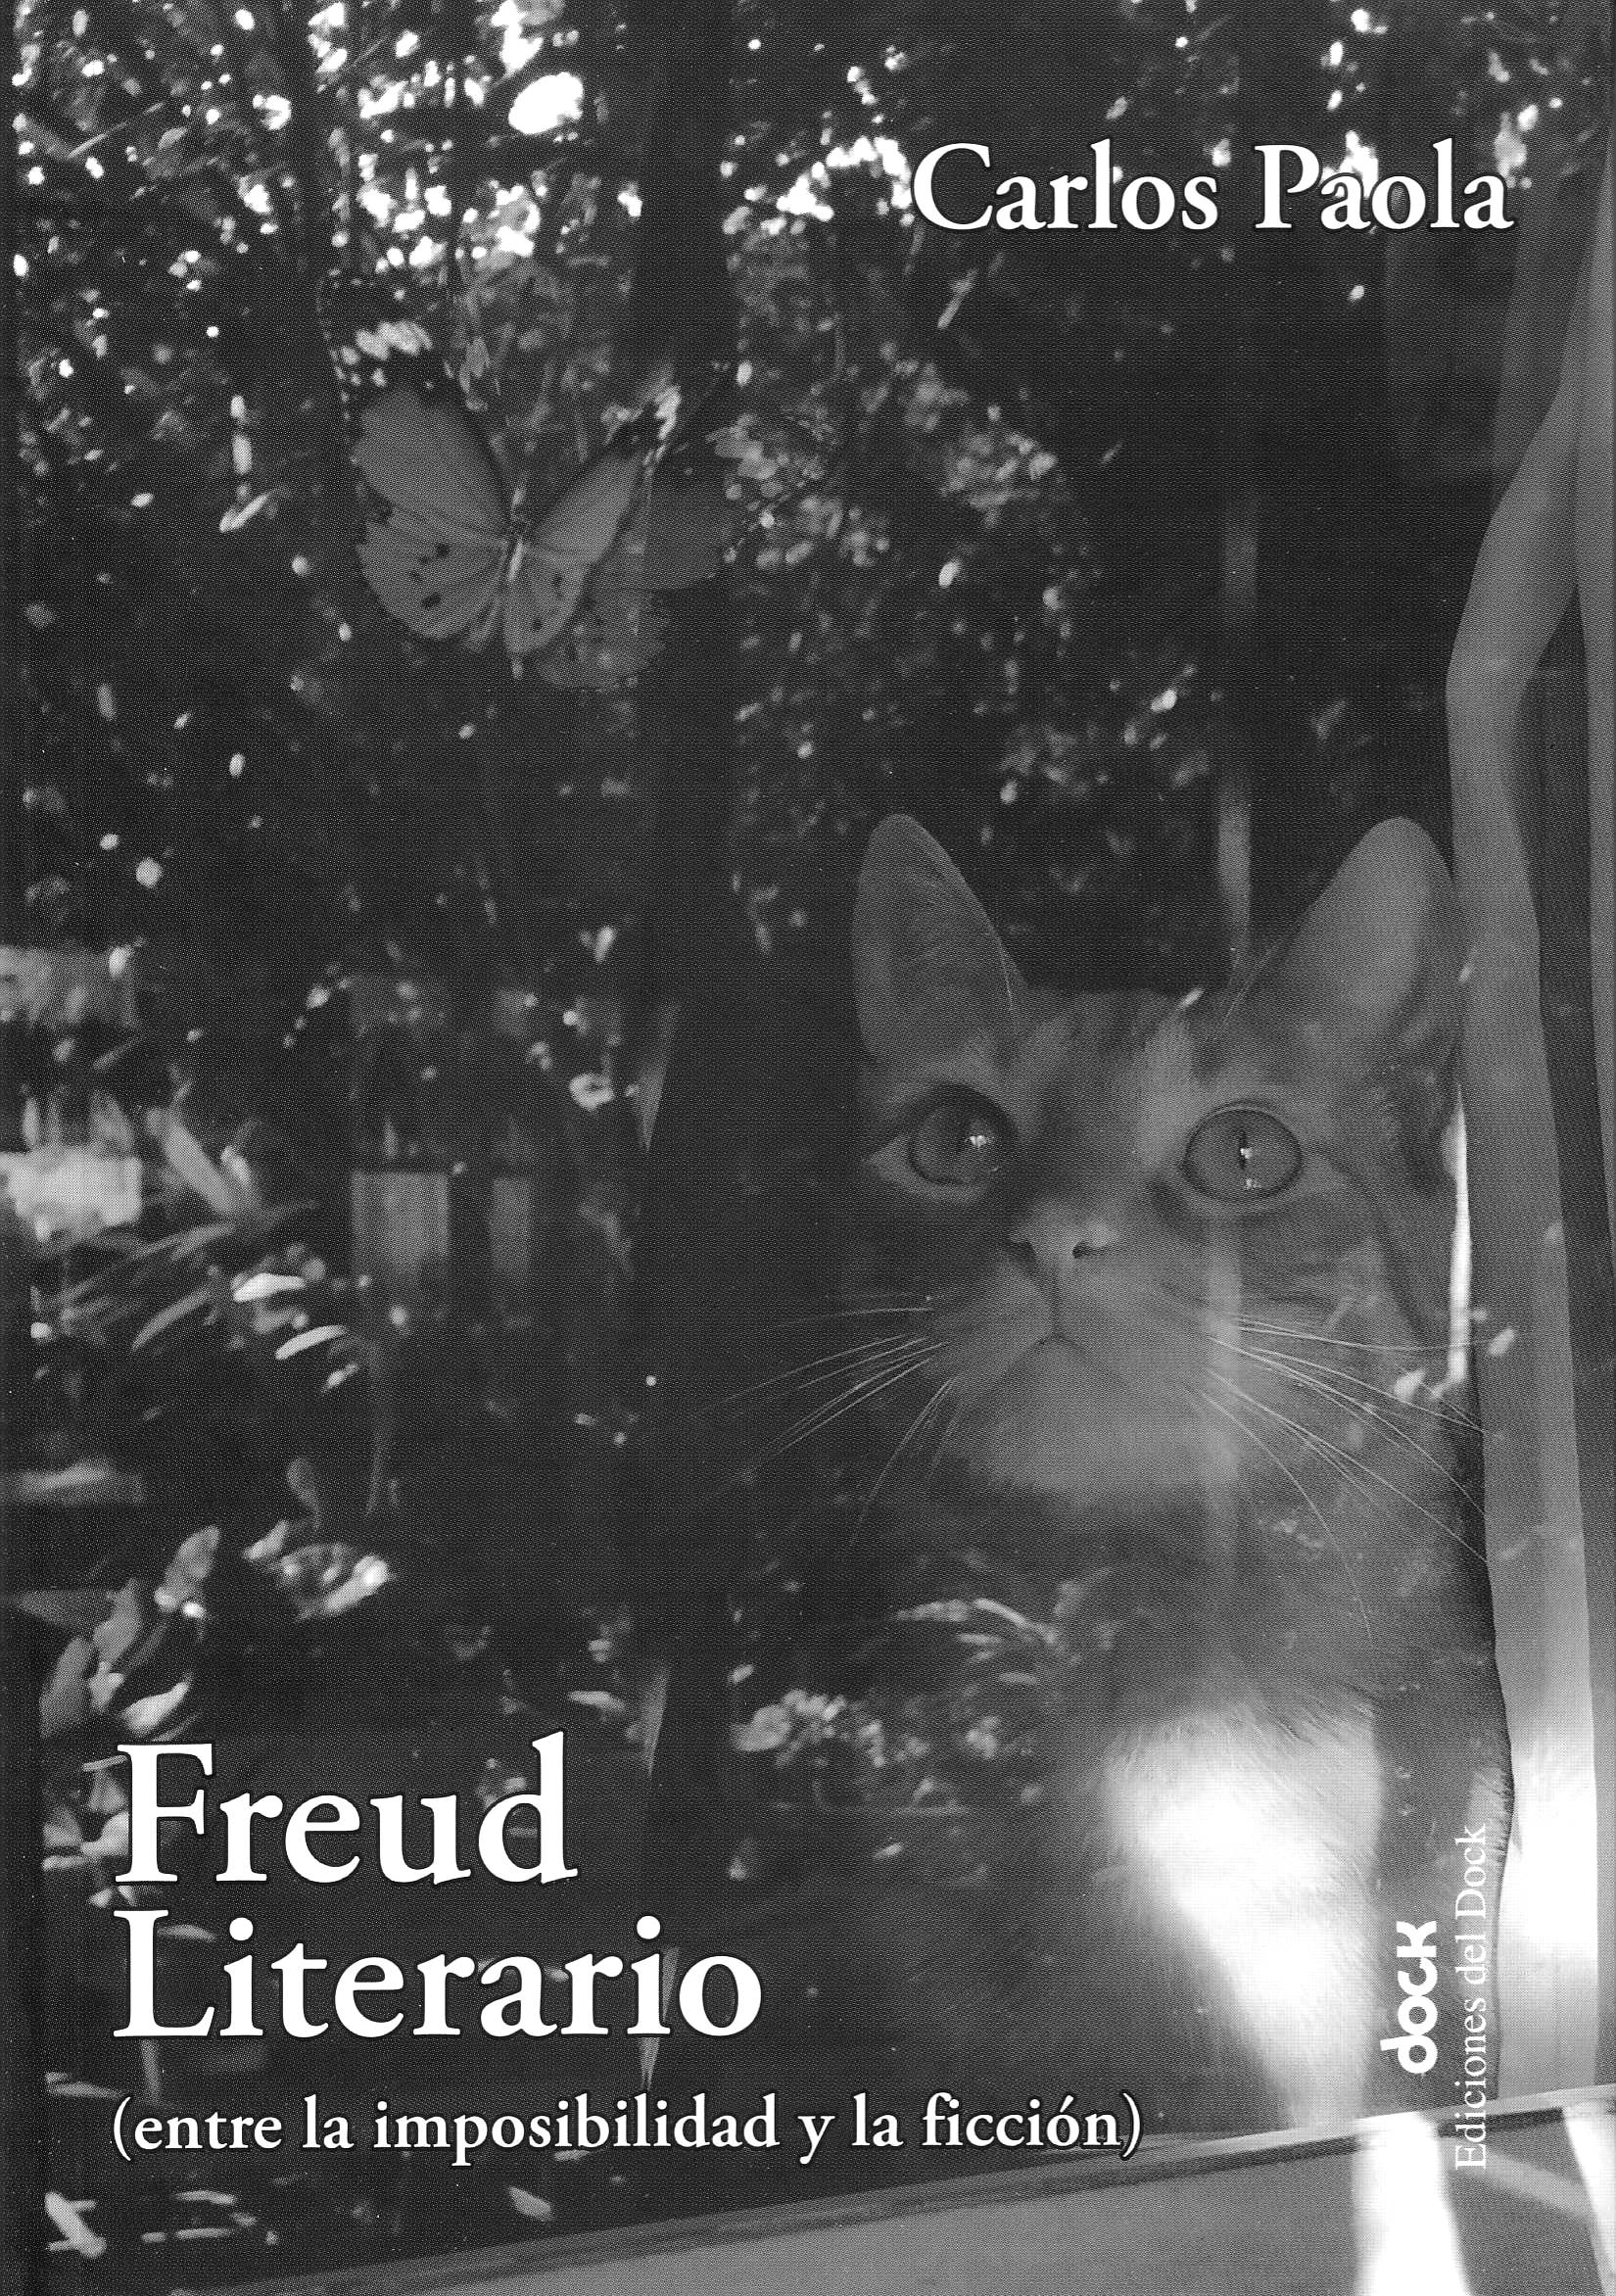 Freud literario (entre la imposibilidad y la ficción)